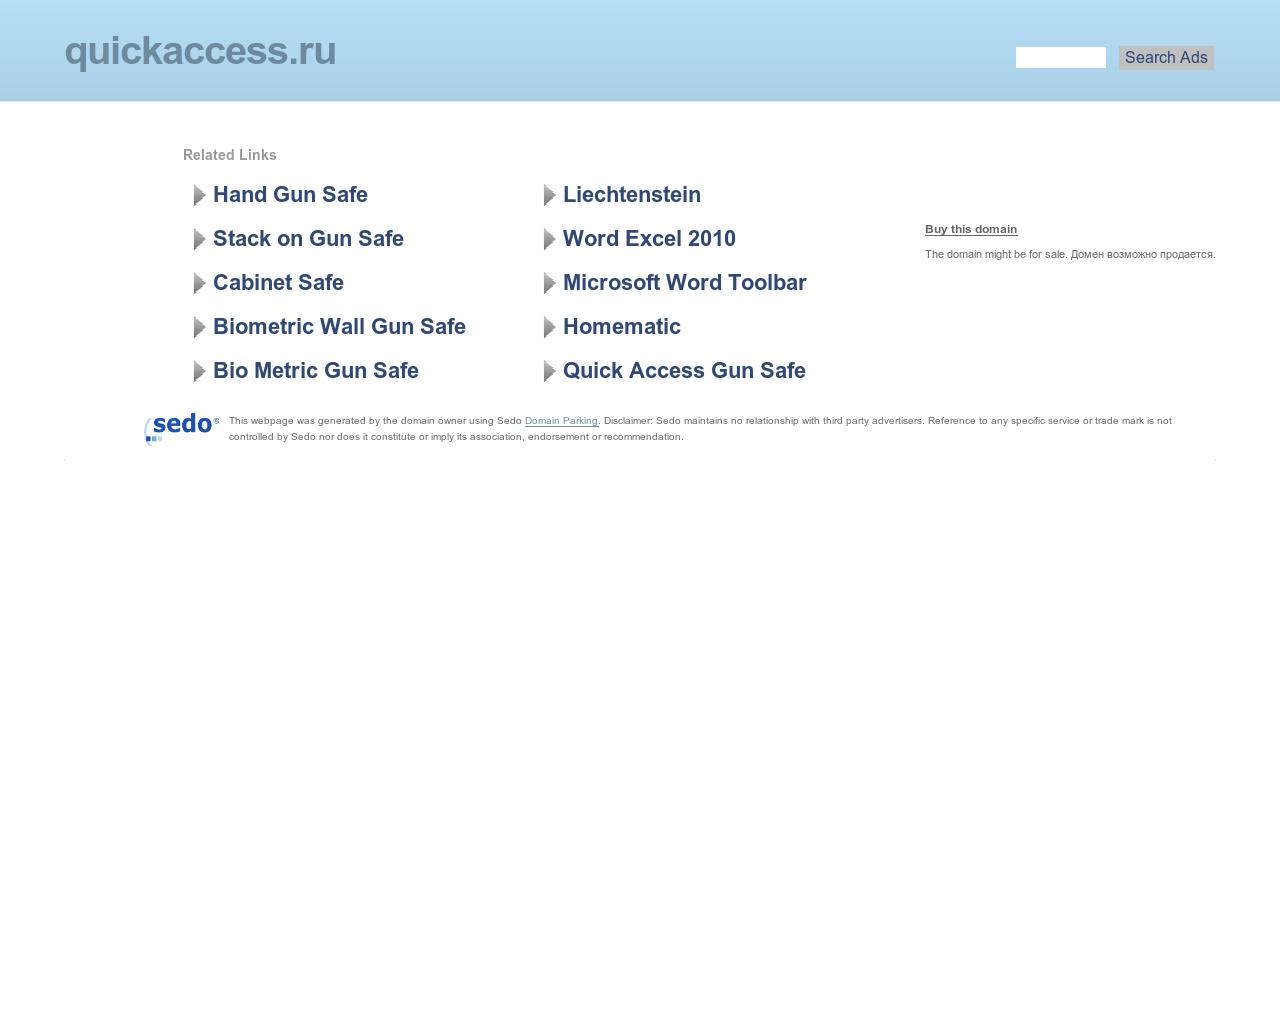 Изображение сайта quickaccess.ru в разрешении 1280x1024